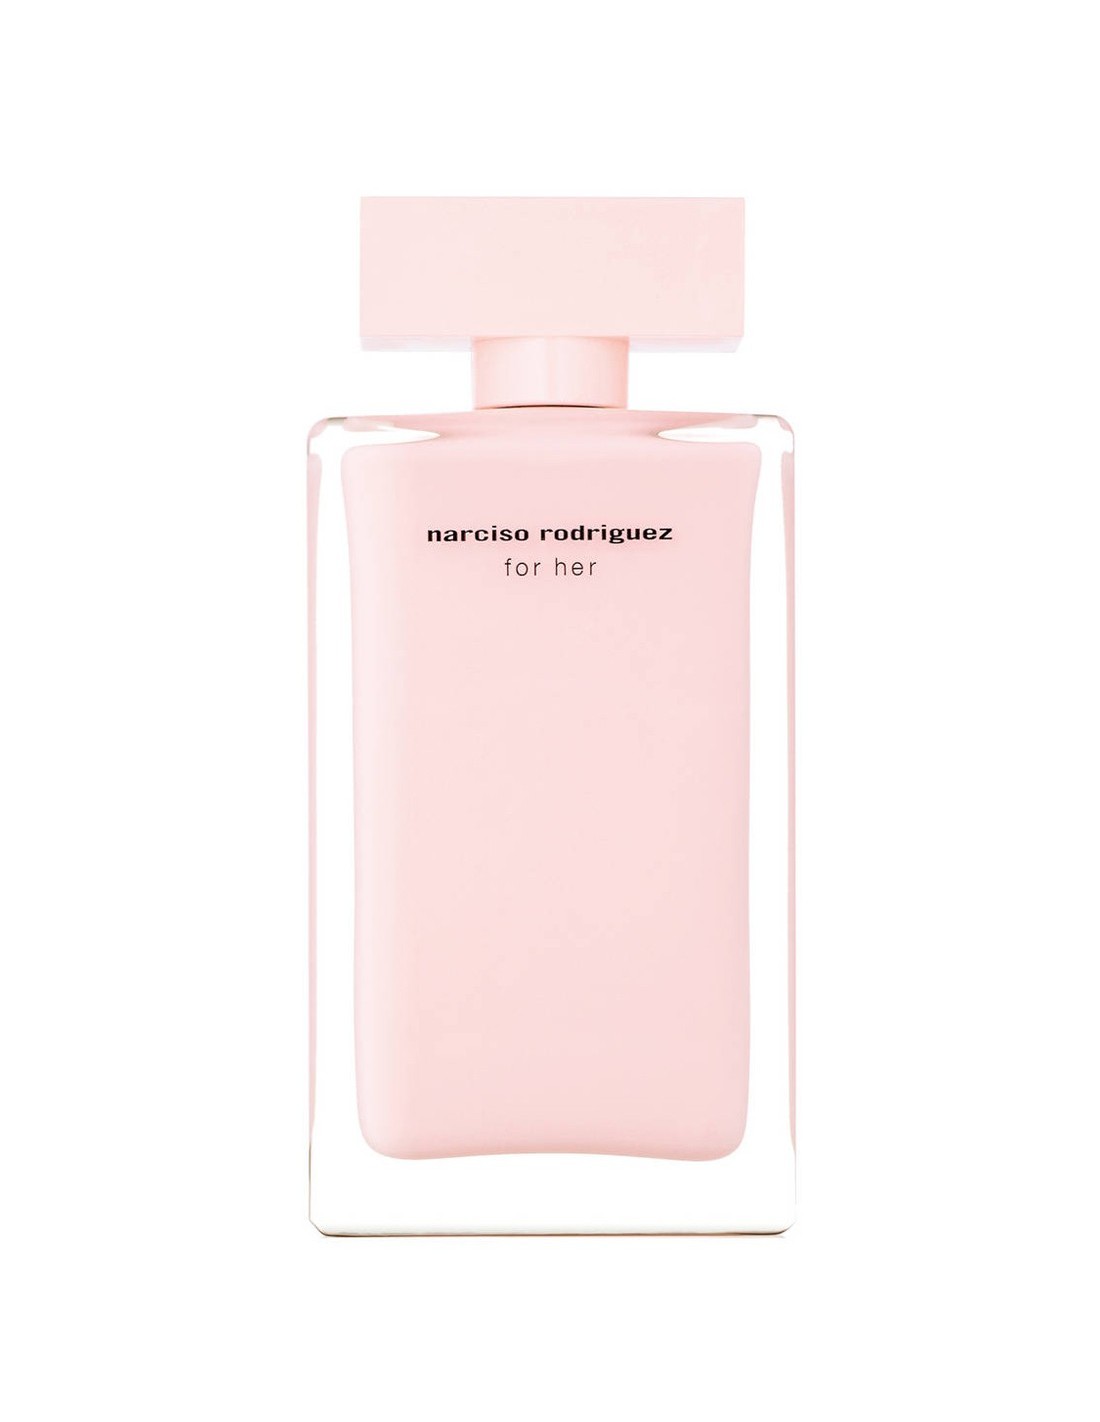 Narciso Rodriguez - for her - Eau de parfum Spray 3.4 OZ